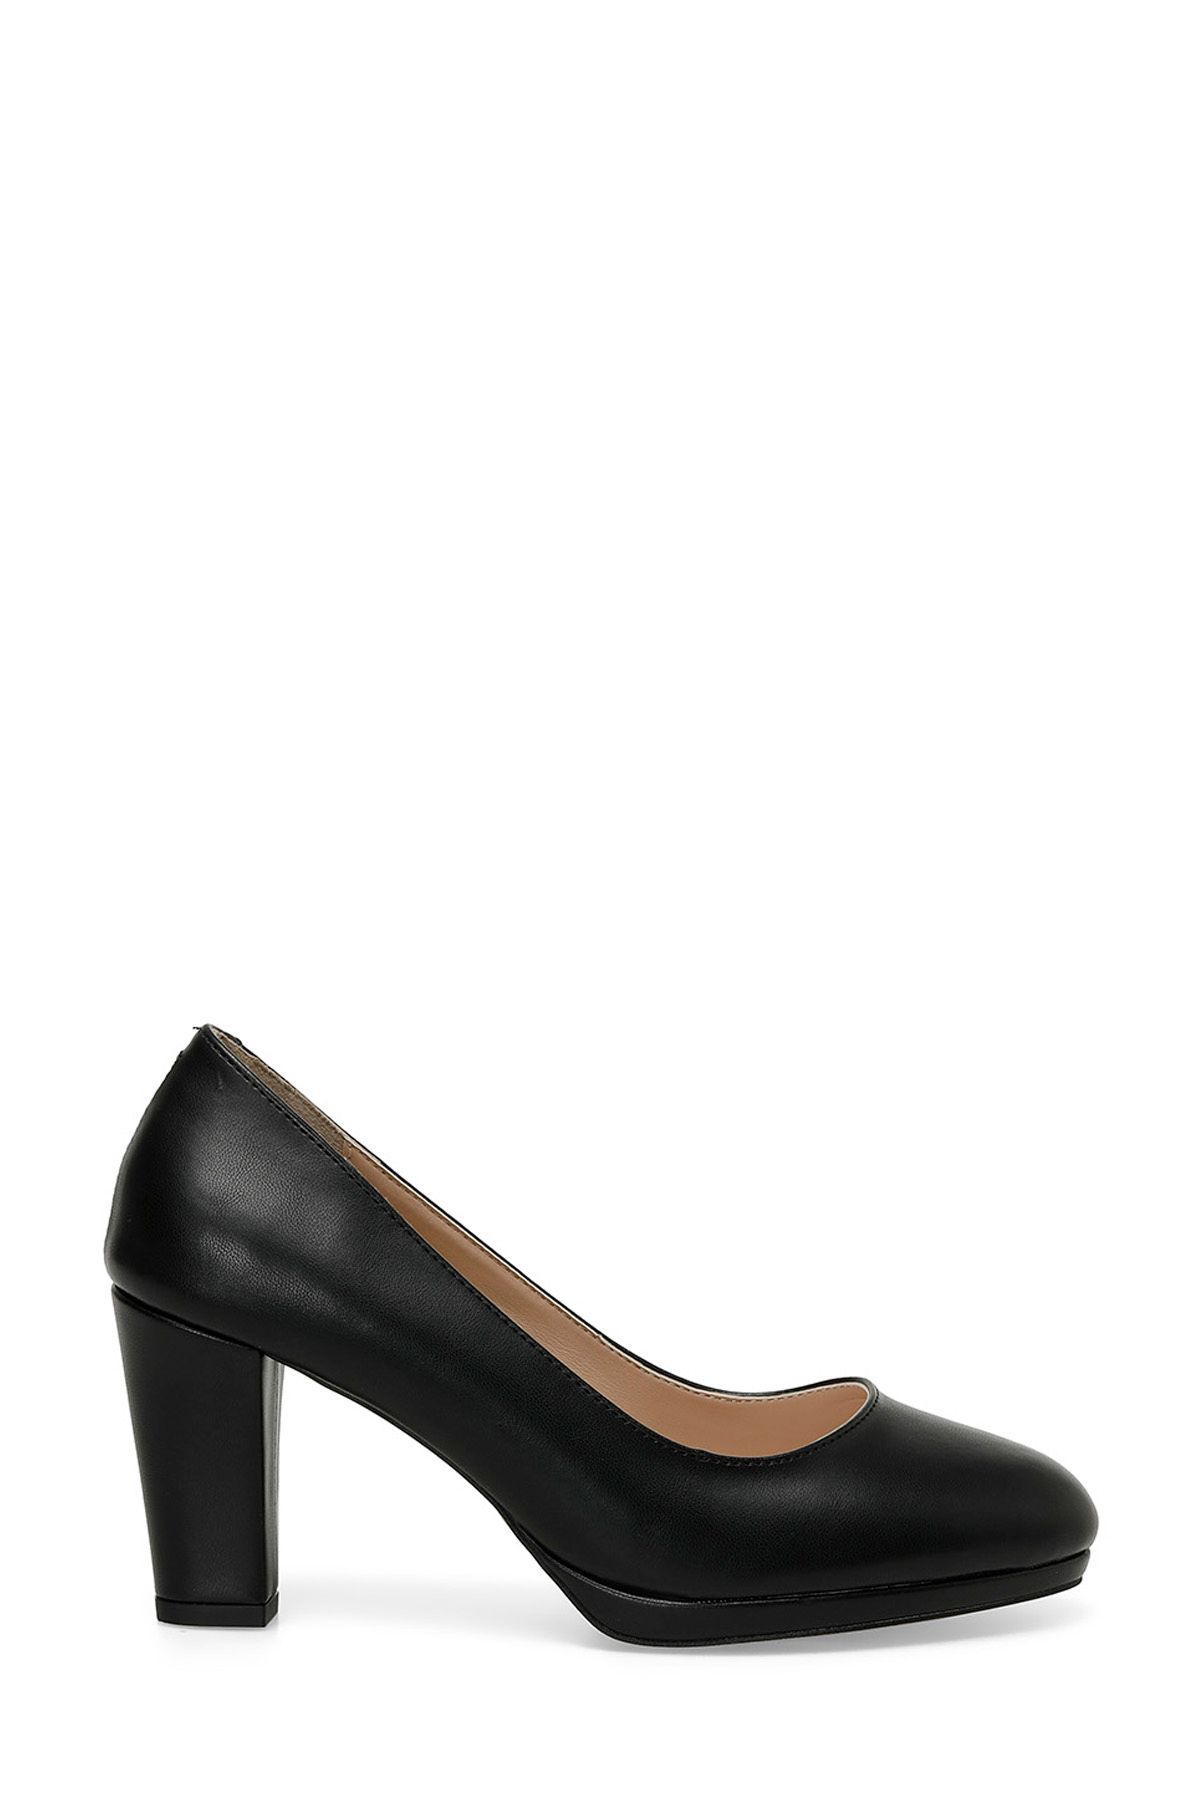 Polaris 319091.Z 4FX Siyah Kadın Topuklu Ayakkabı